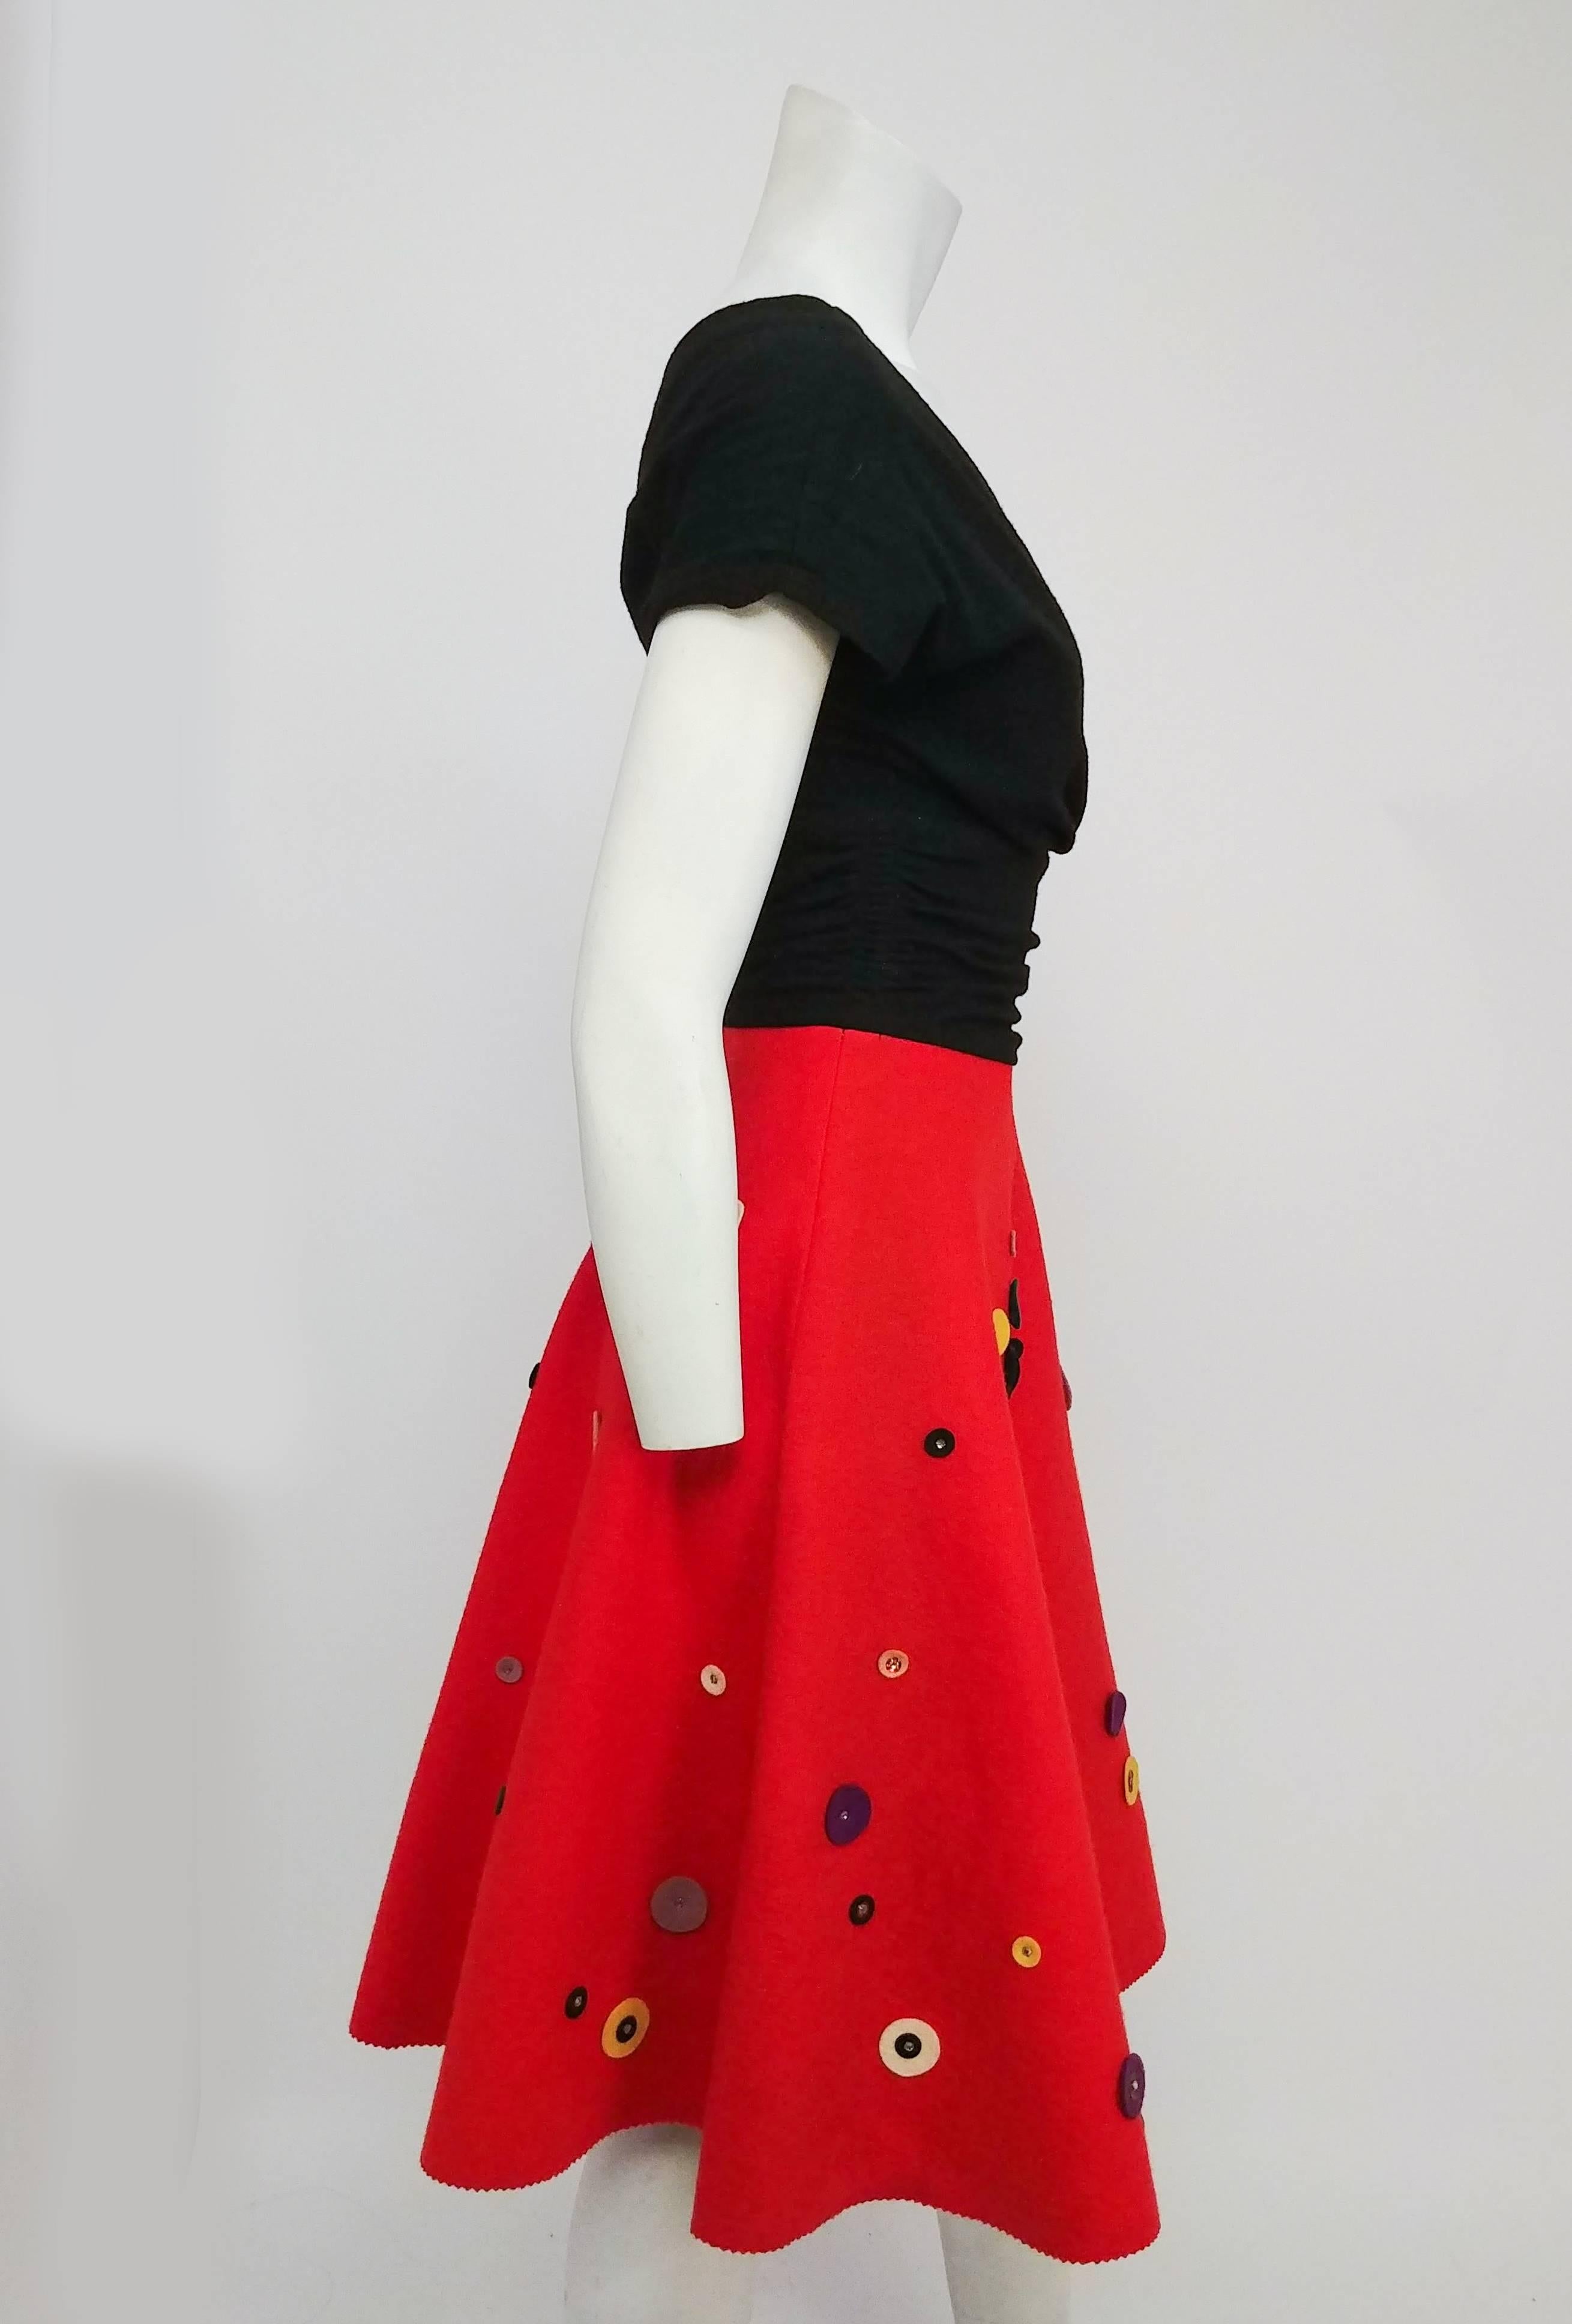 Rouge Robe fantaisie A-Line rouge et noire, années 1950  en vente